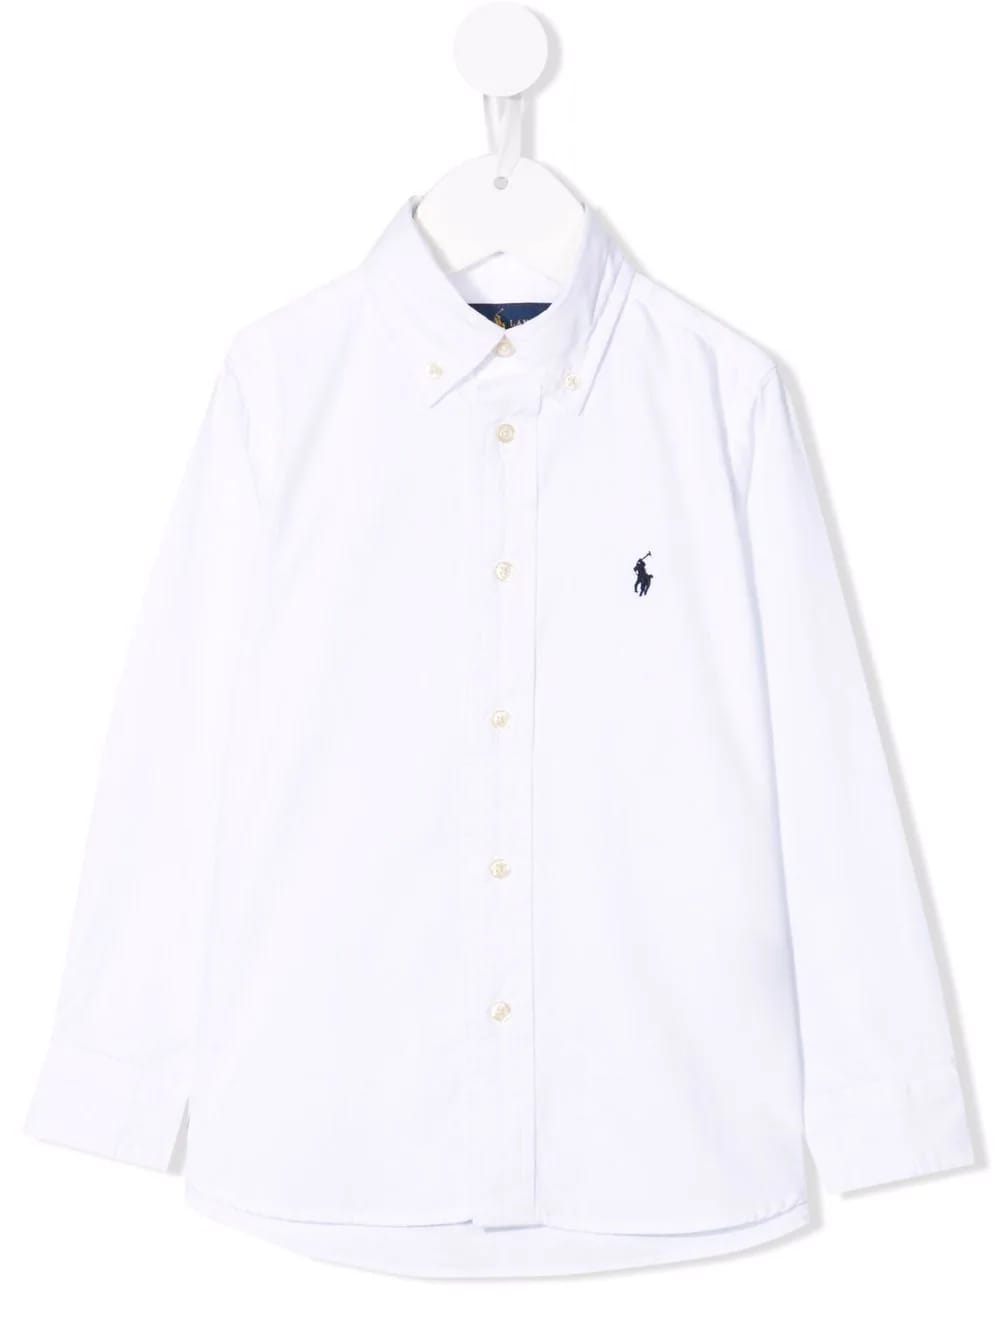 Ralph Lauren Child Oxford Shirt In White Slim-fit Cotton